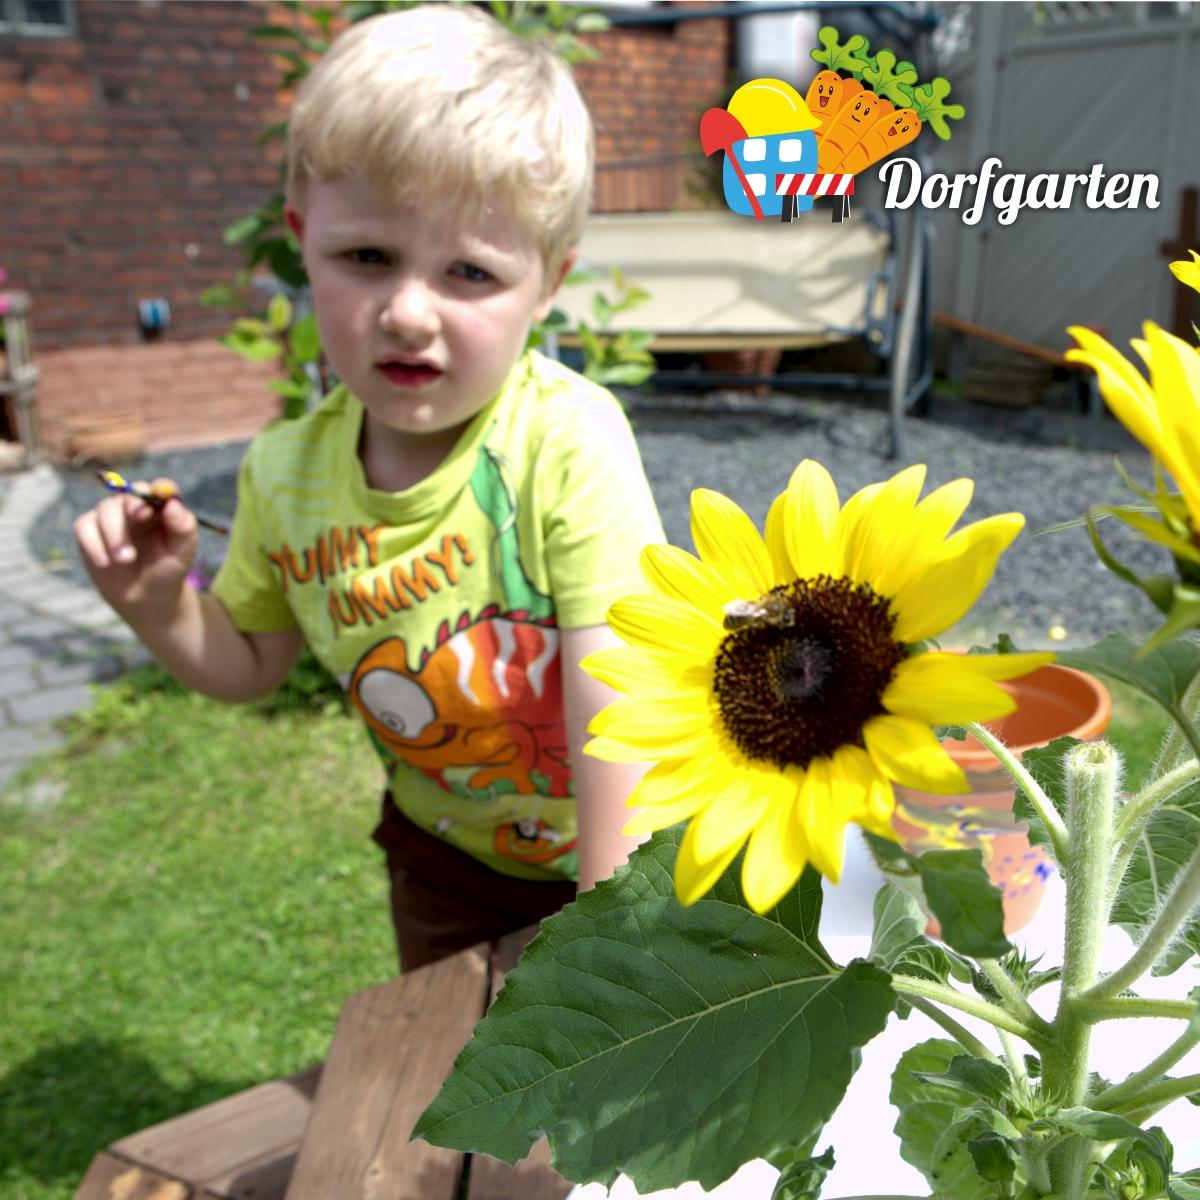 Ein Kind hält einen Pinsel, im Vordergrund steht eine Sonnenblume © Thorsten Rogsch